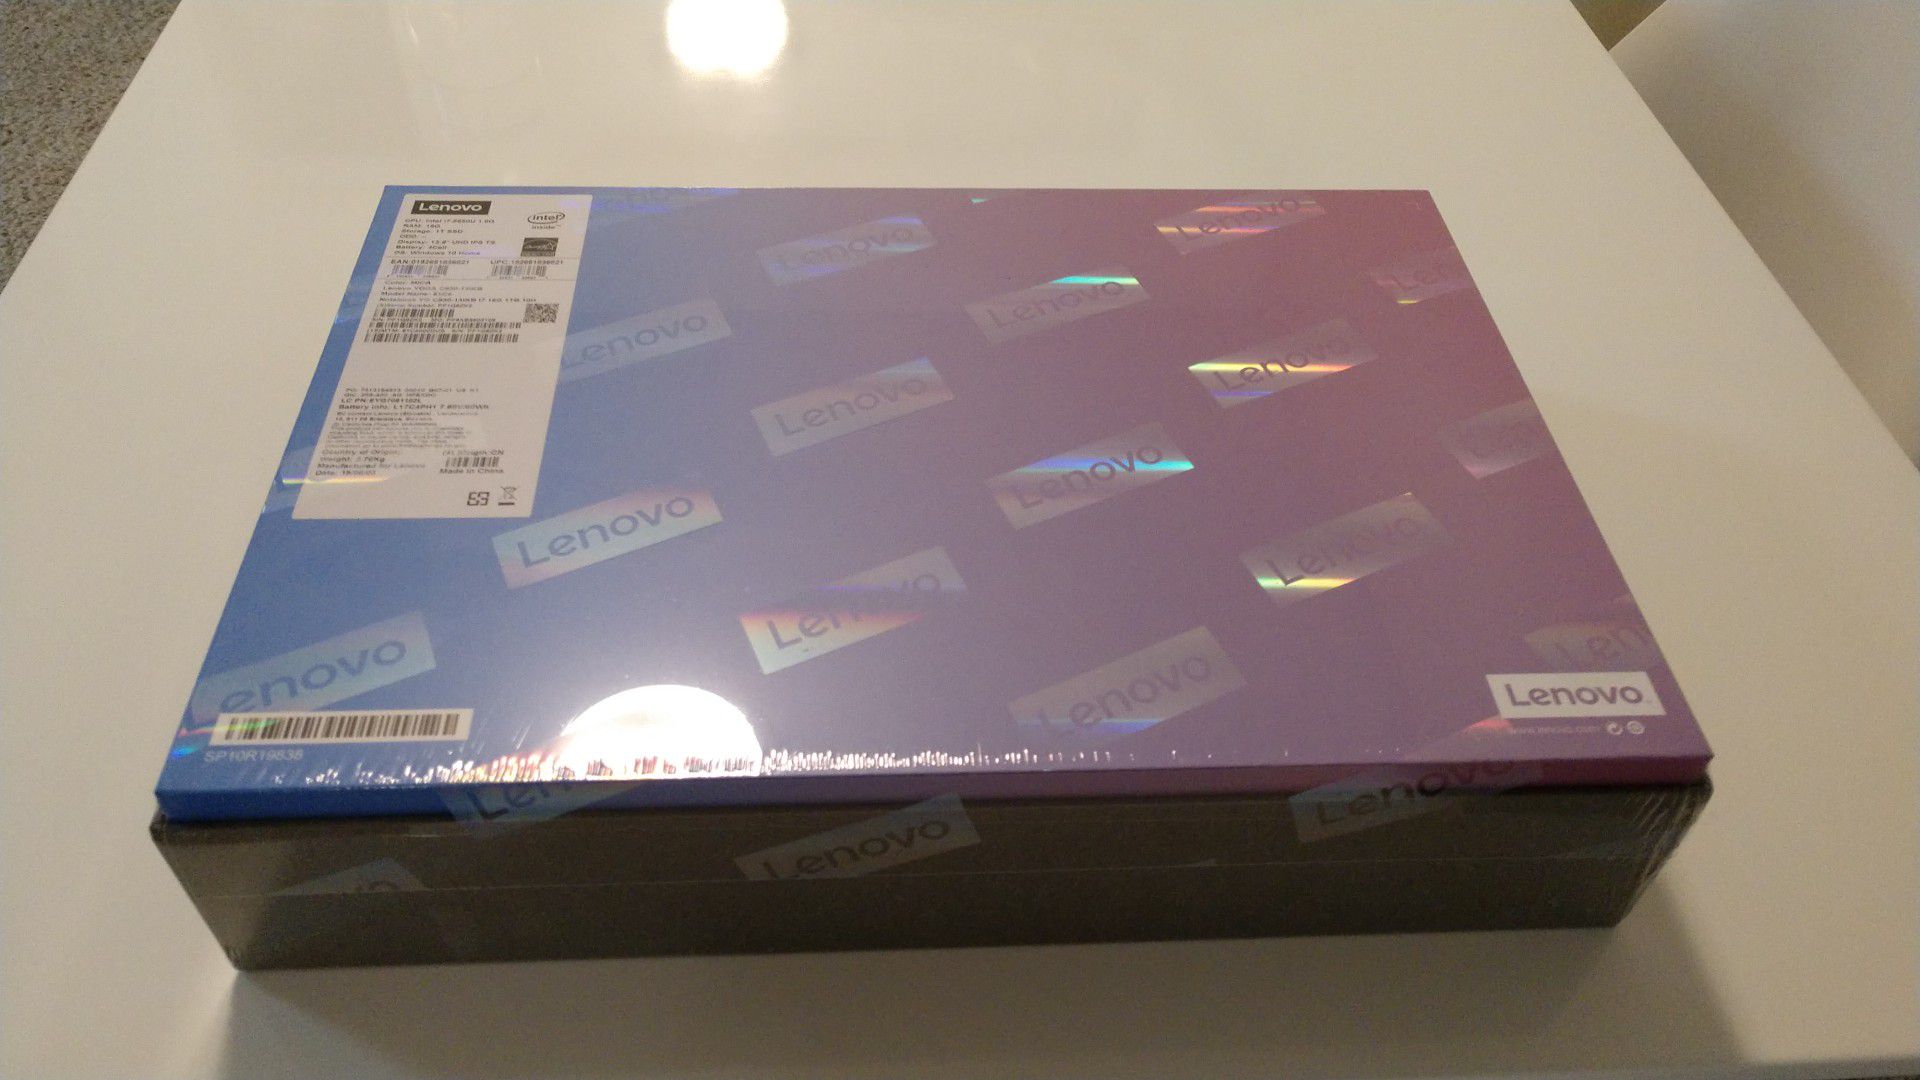 Lenovo Yoga laptop C930-13IKB Mica- price in store $1700, brand new in sealed box